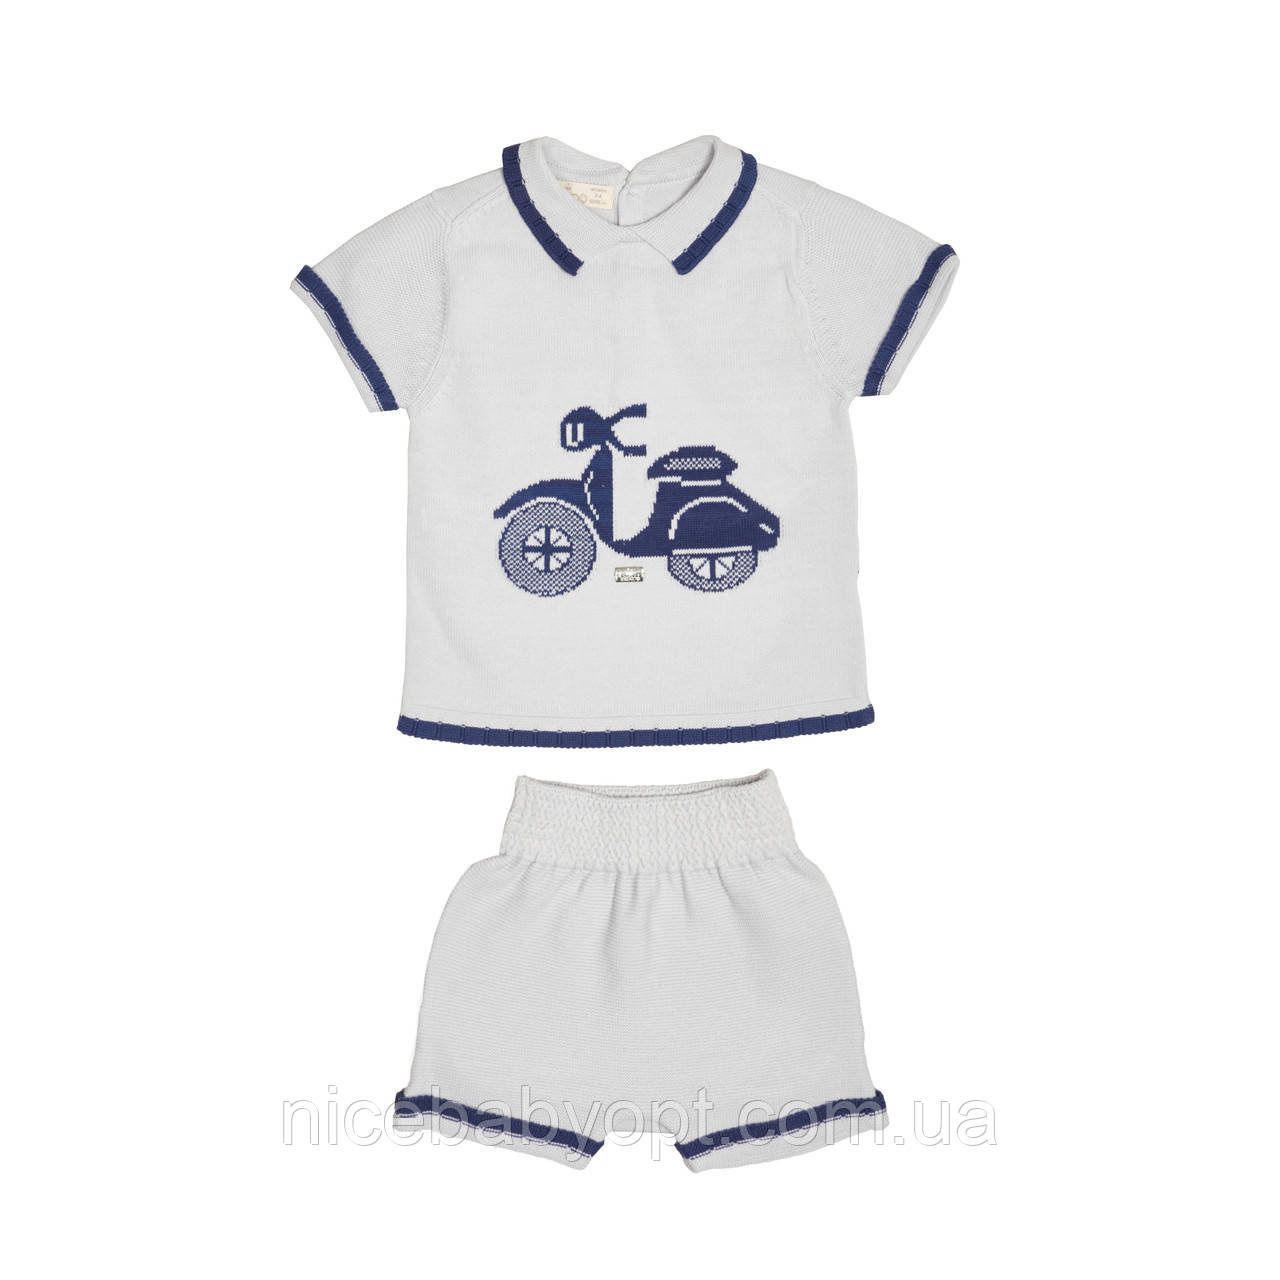 Набор для мальчика Twins Leo Мото (футболка и шорты) PUE-8331-6-9, grey, серый, 6-9 мес